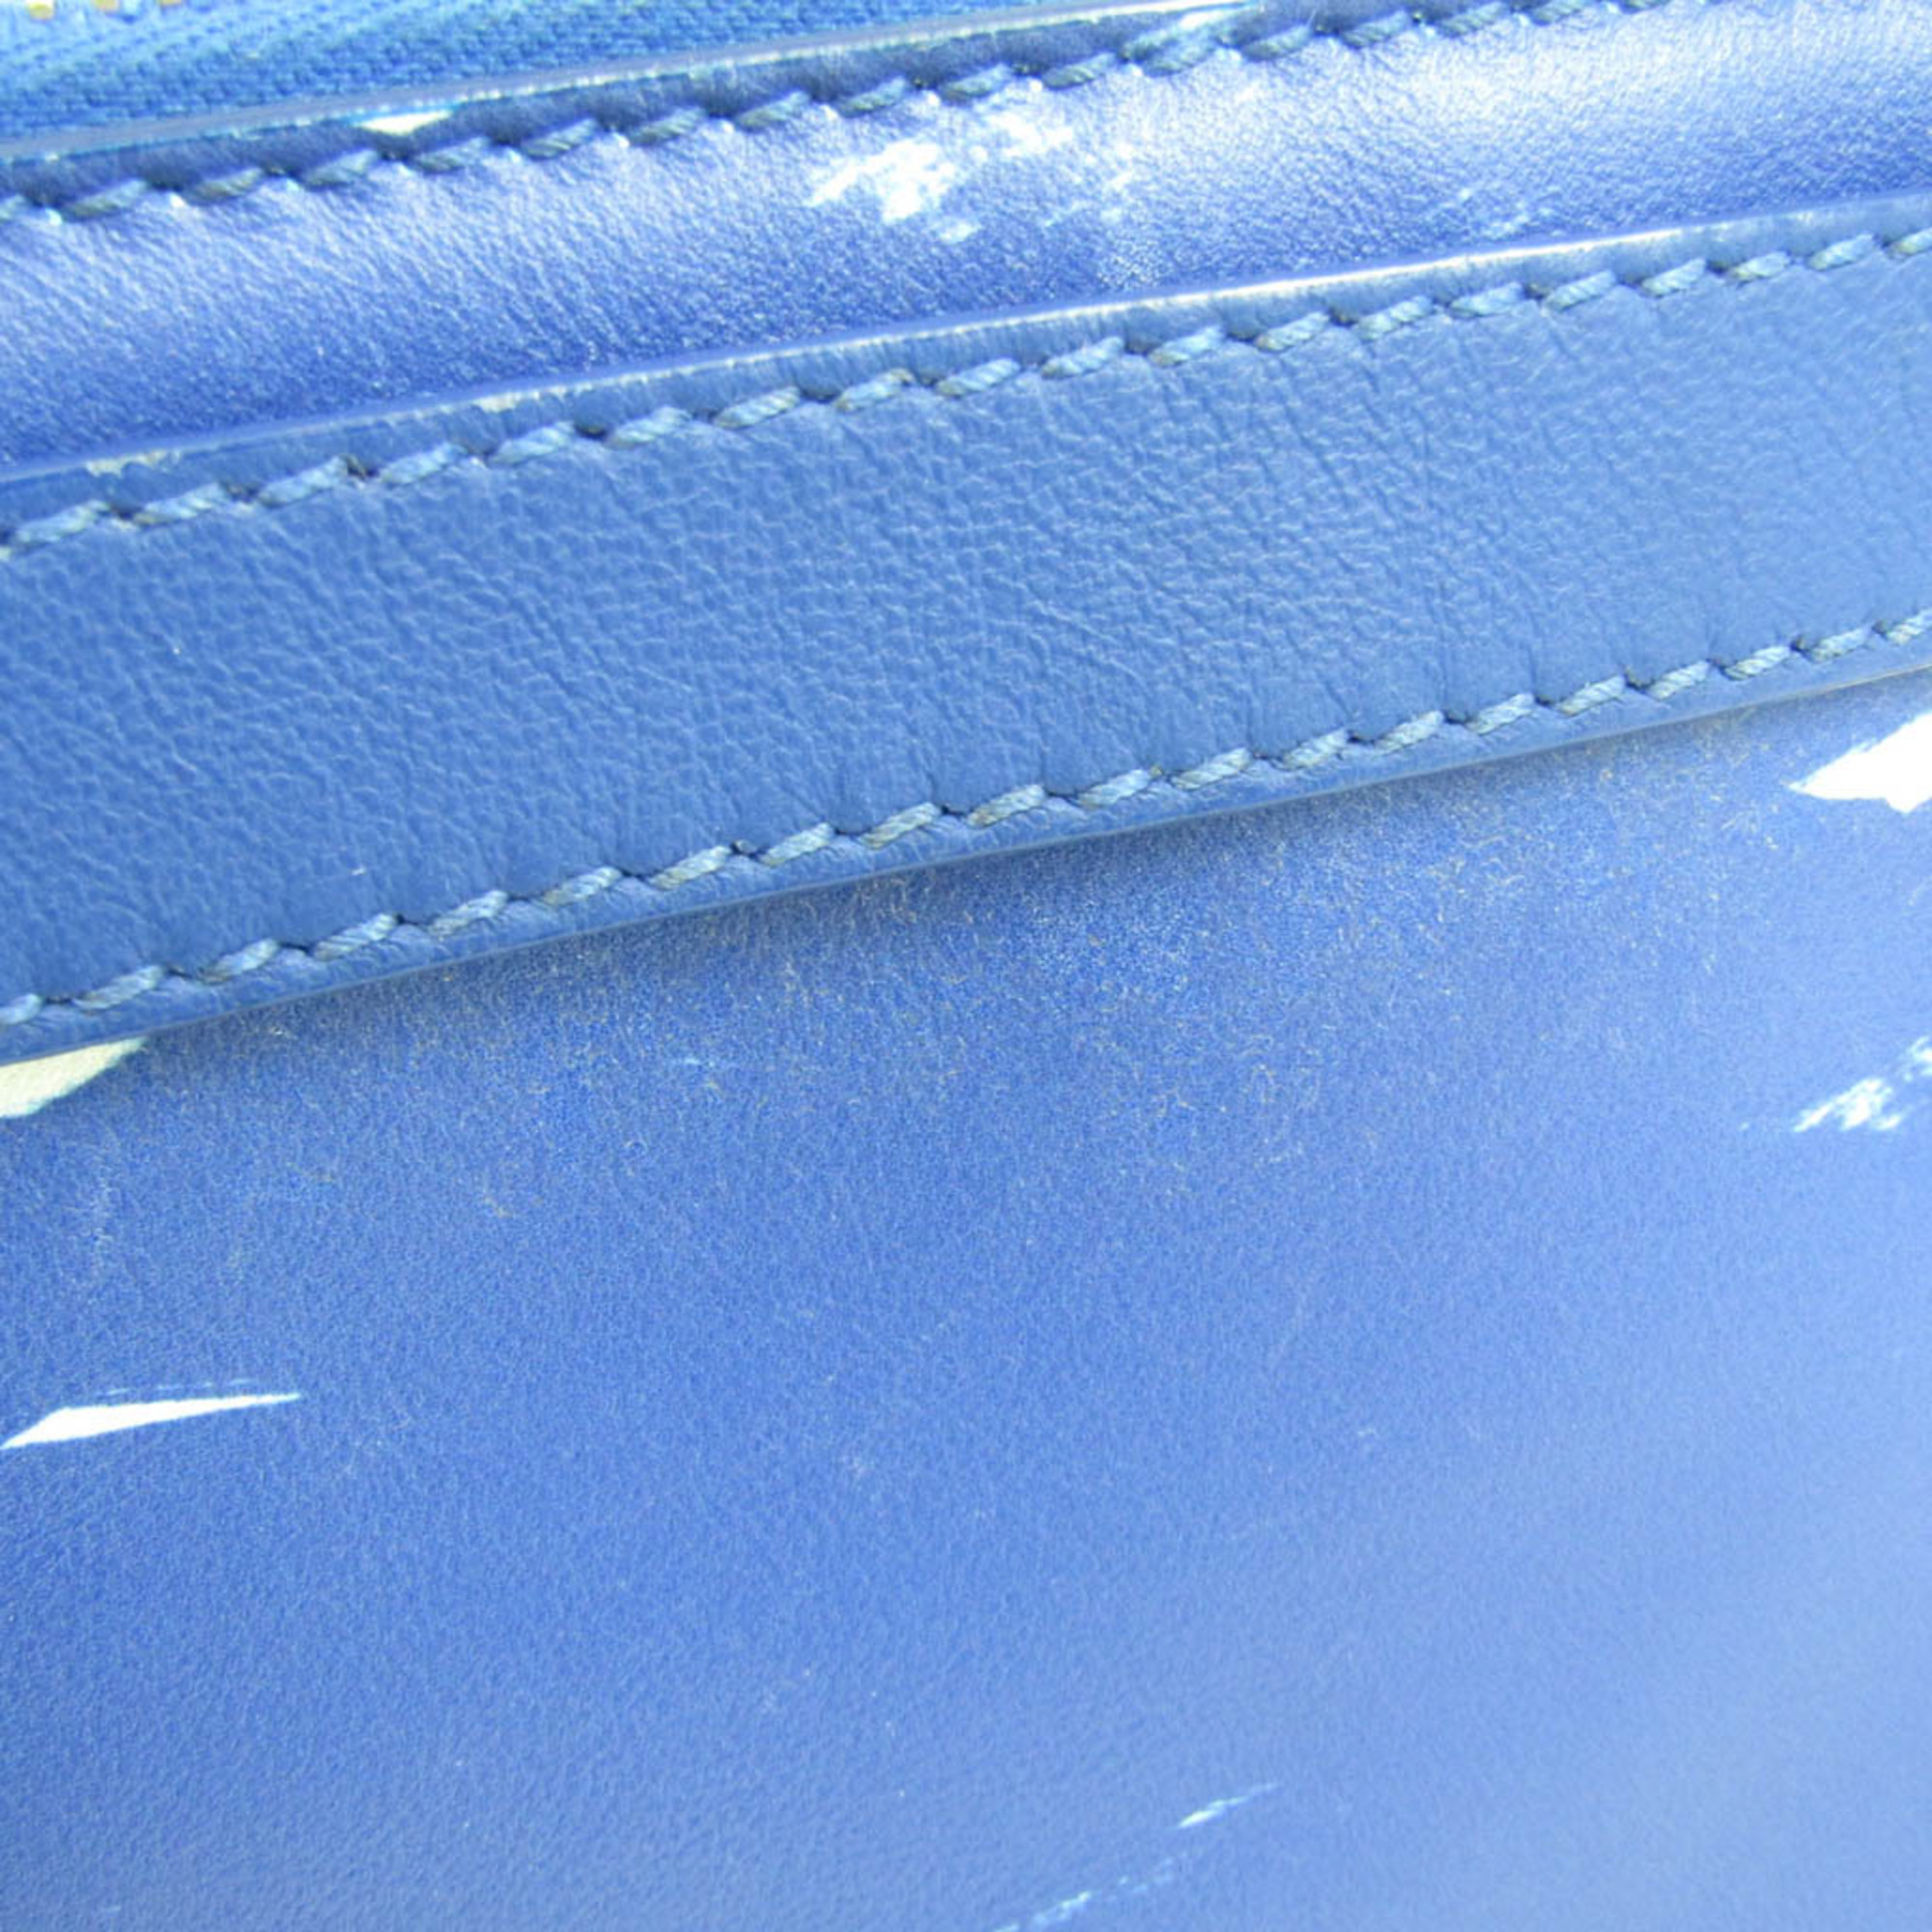 バレンシアガ(Balenciaga) イリアスクリップ 358308 メンズ,レディース レザー クラッチバッグ ブルー